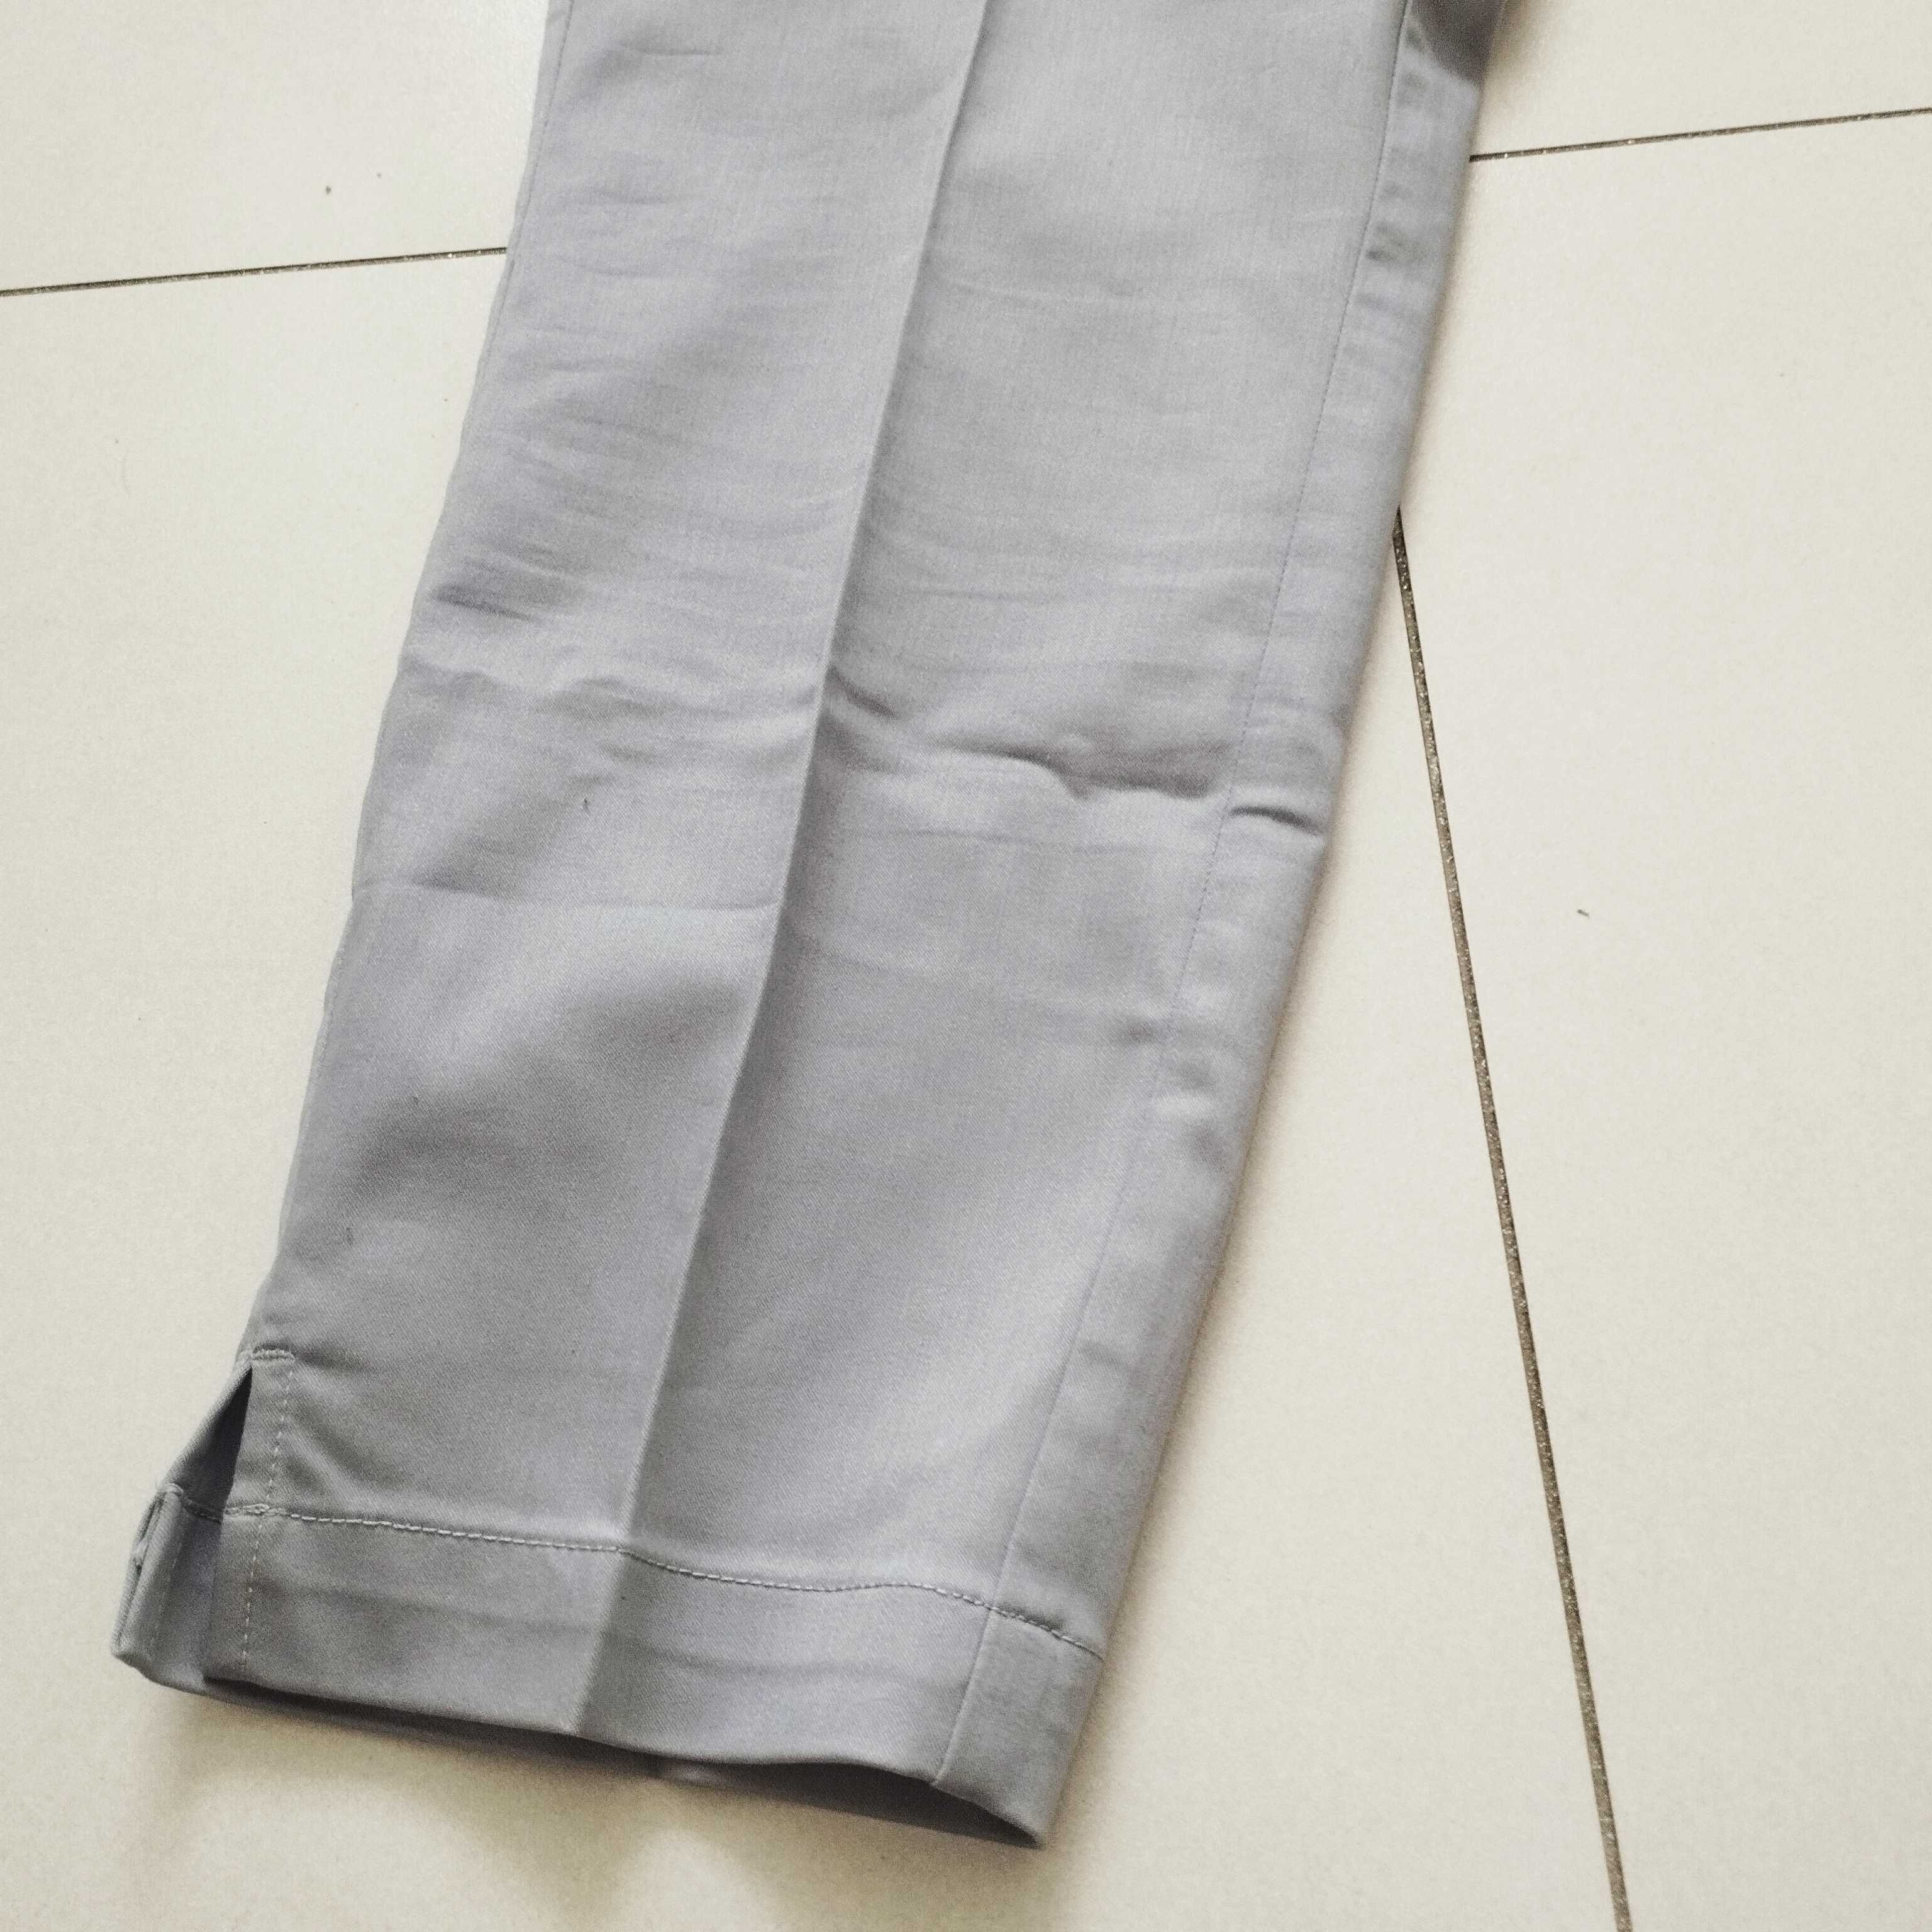 Spodnie damskie 38/40/42 C&A proste nogawki z kantem szare eleganckie